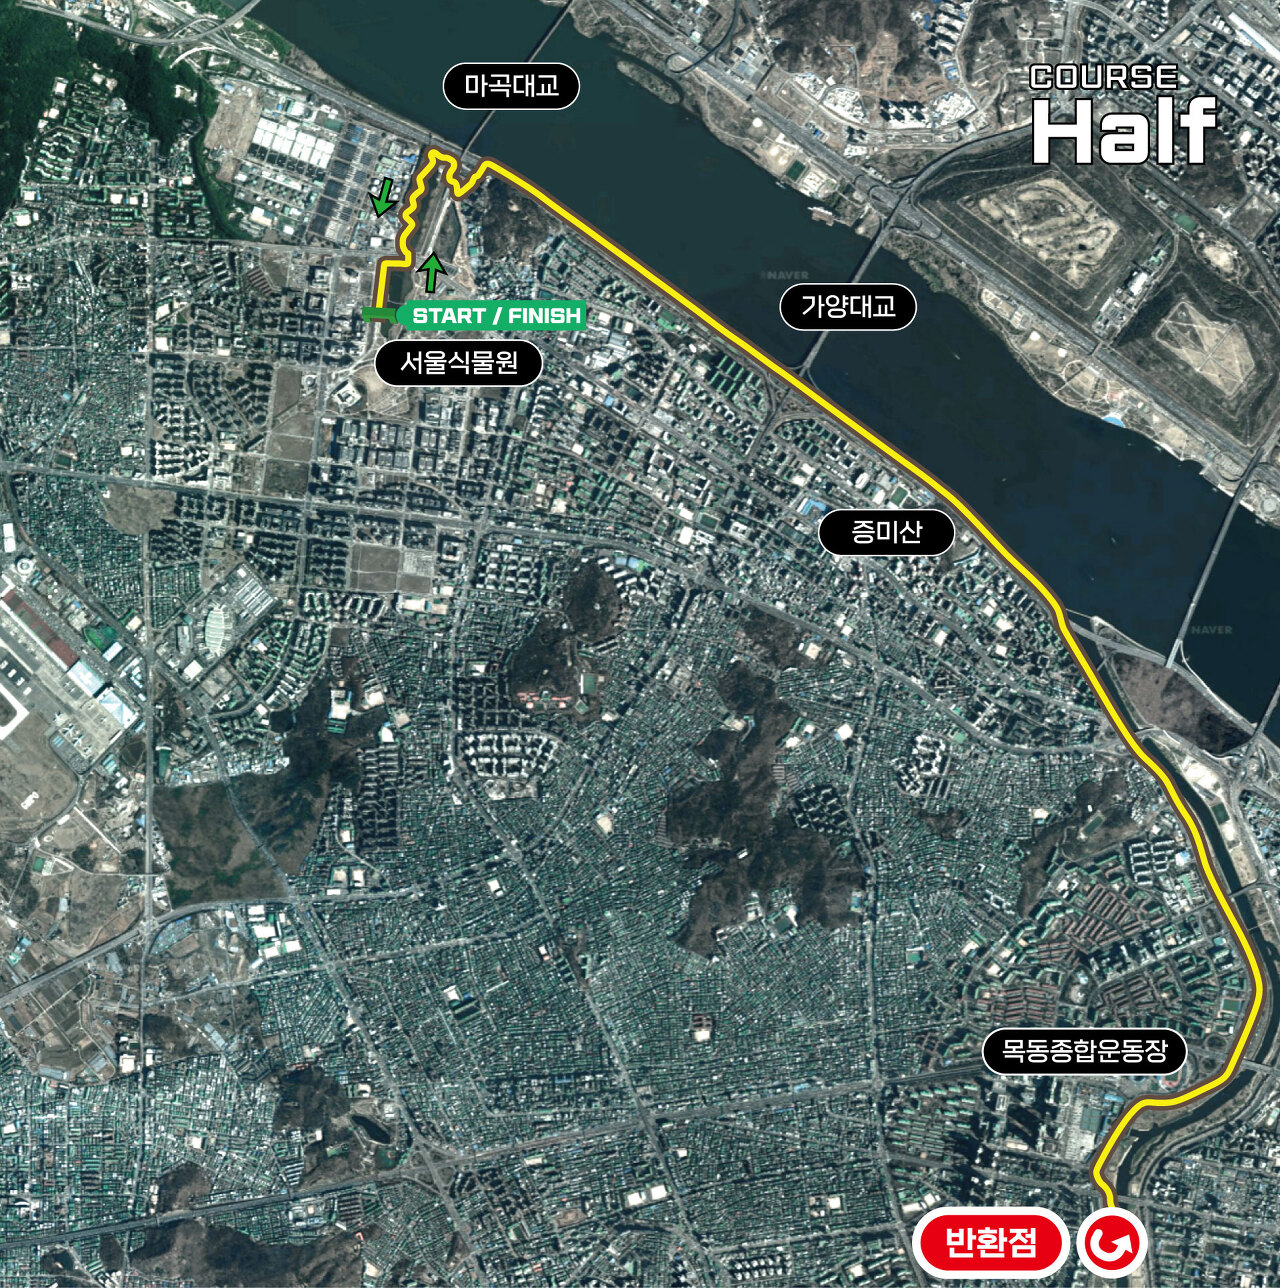 제21회 강서 허준 건강마라톤 대회 하프 코스맵